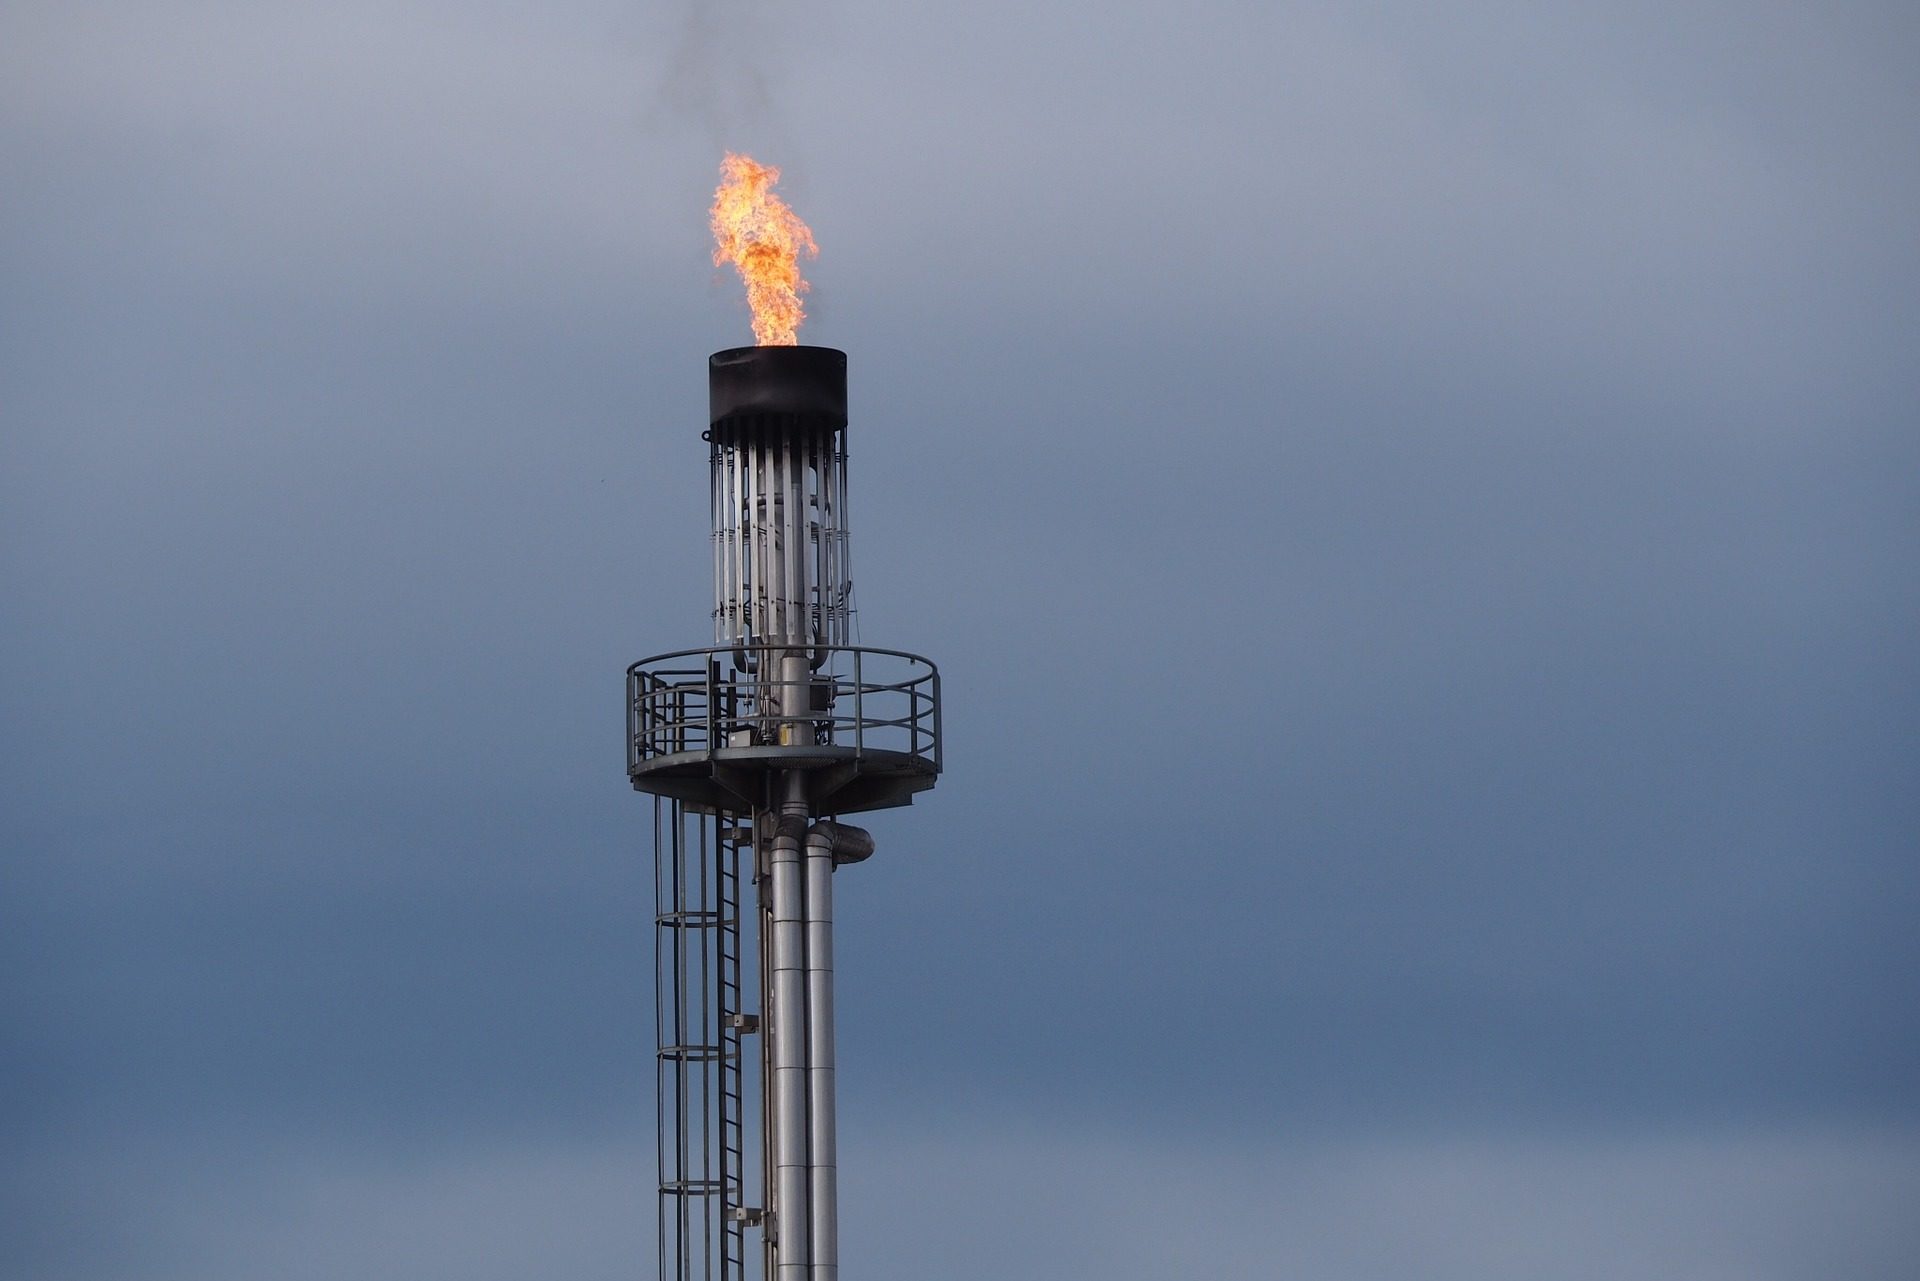 Crise energética pode contribuir para redução de fósseis nas próximas décadas. Na imagem: plataforma com flare aberto, para queima do excesso de gás (Foto: Pixabay)